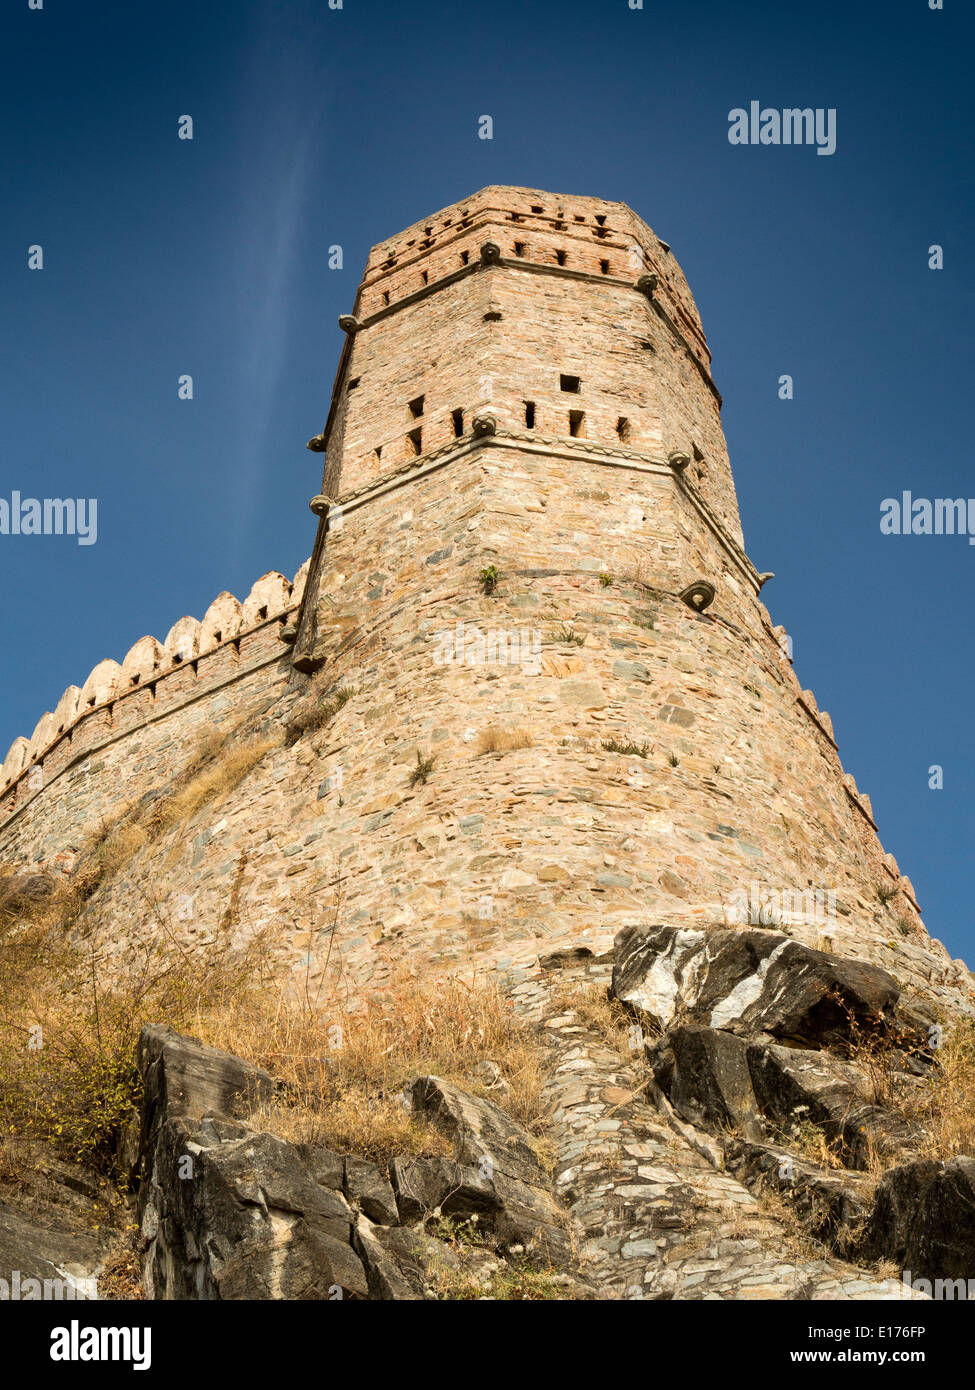 India, Rajasthan, Rajsamand, Kumbhalgarh Fort, Fortified tower of Rana Pratap Stock Photo